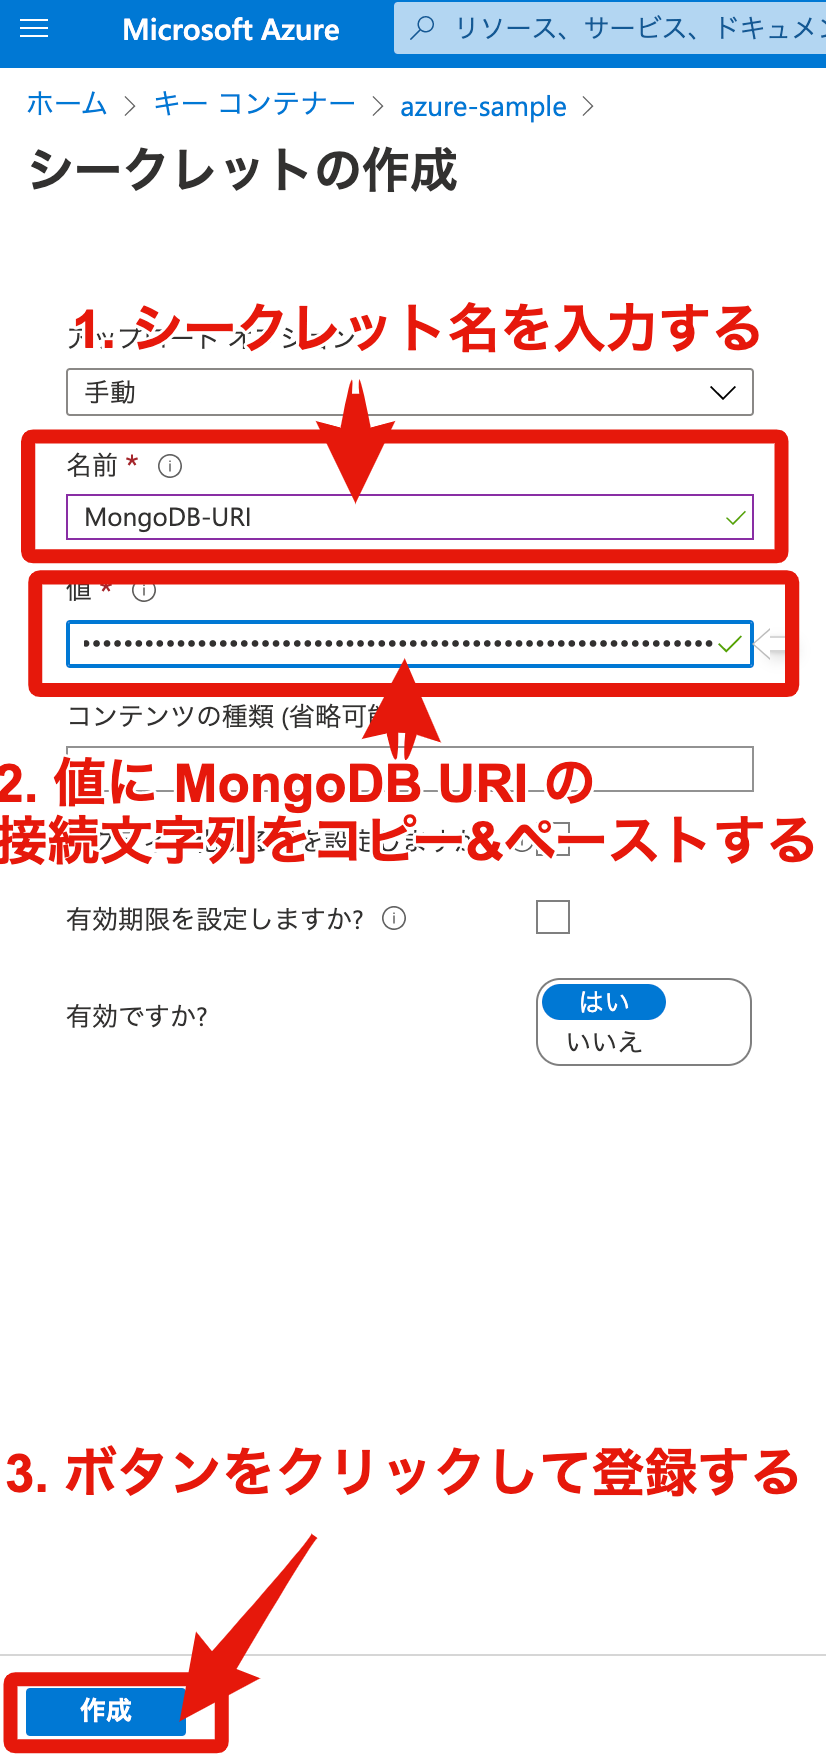 3. 控えておいた Azure Cosmos DB のプライマリ文字列 (MongoDB URI) をシークレットに登録する